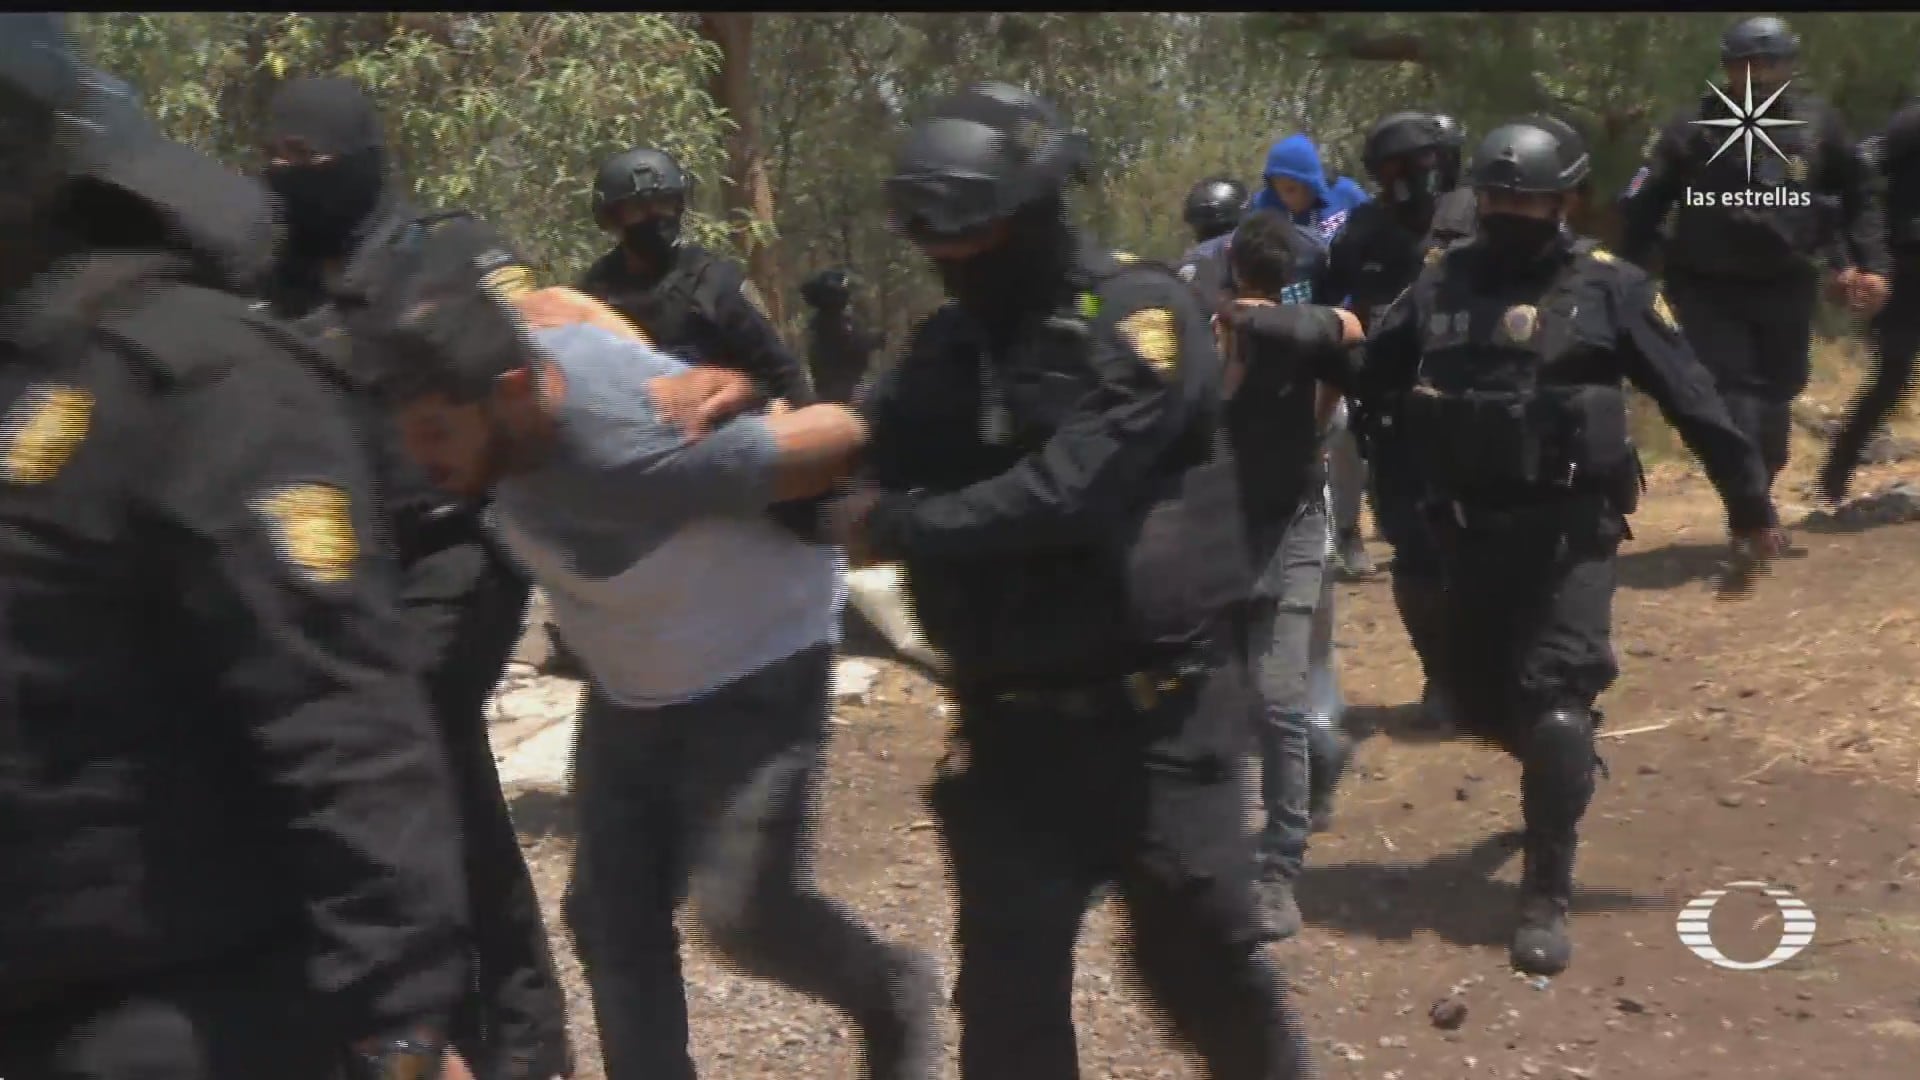 enfrentamiento entre policias e invasores de predio en tlalpan culmina en detenciones